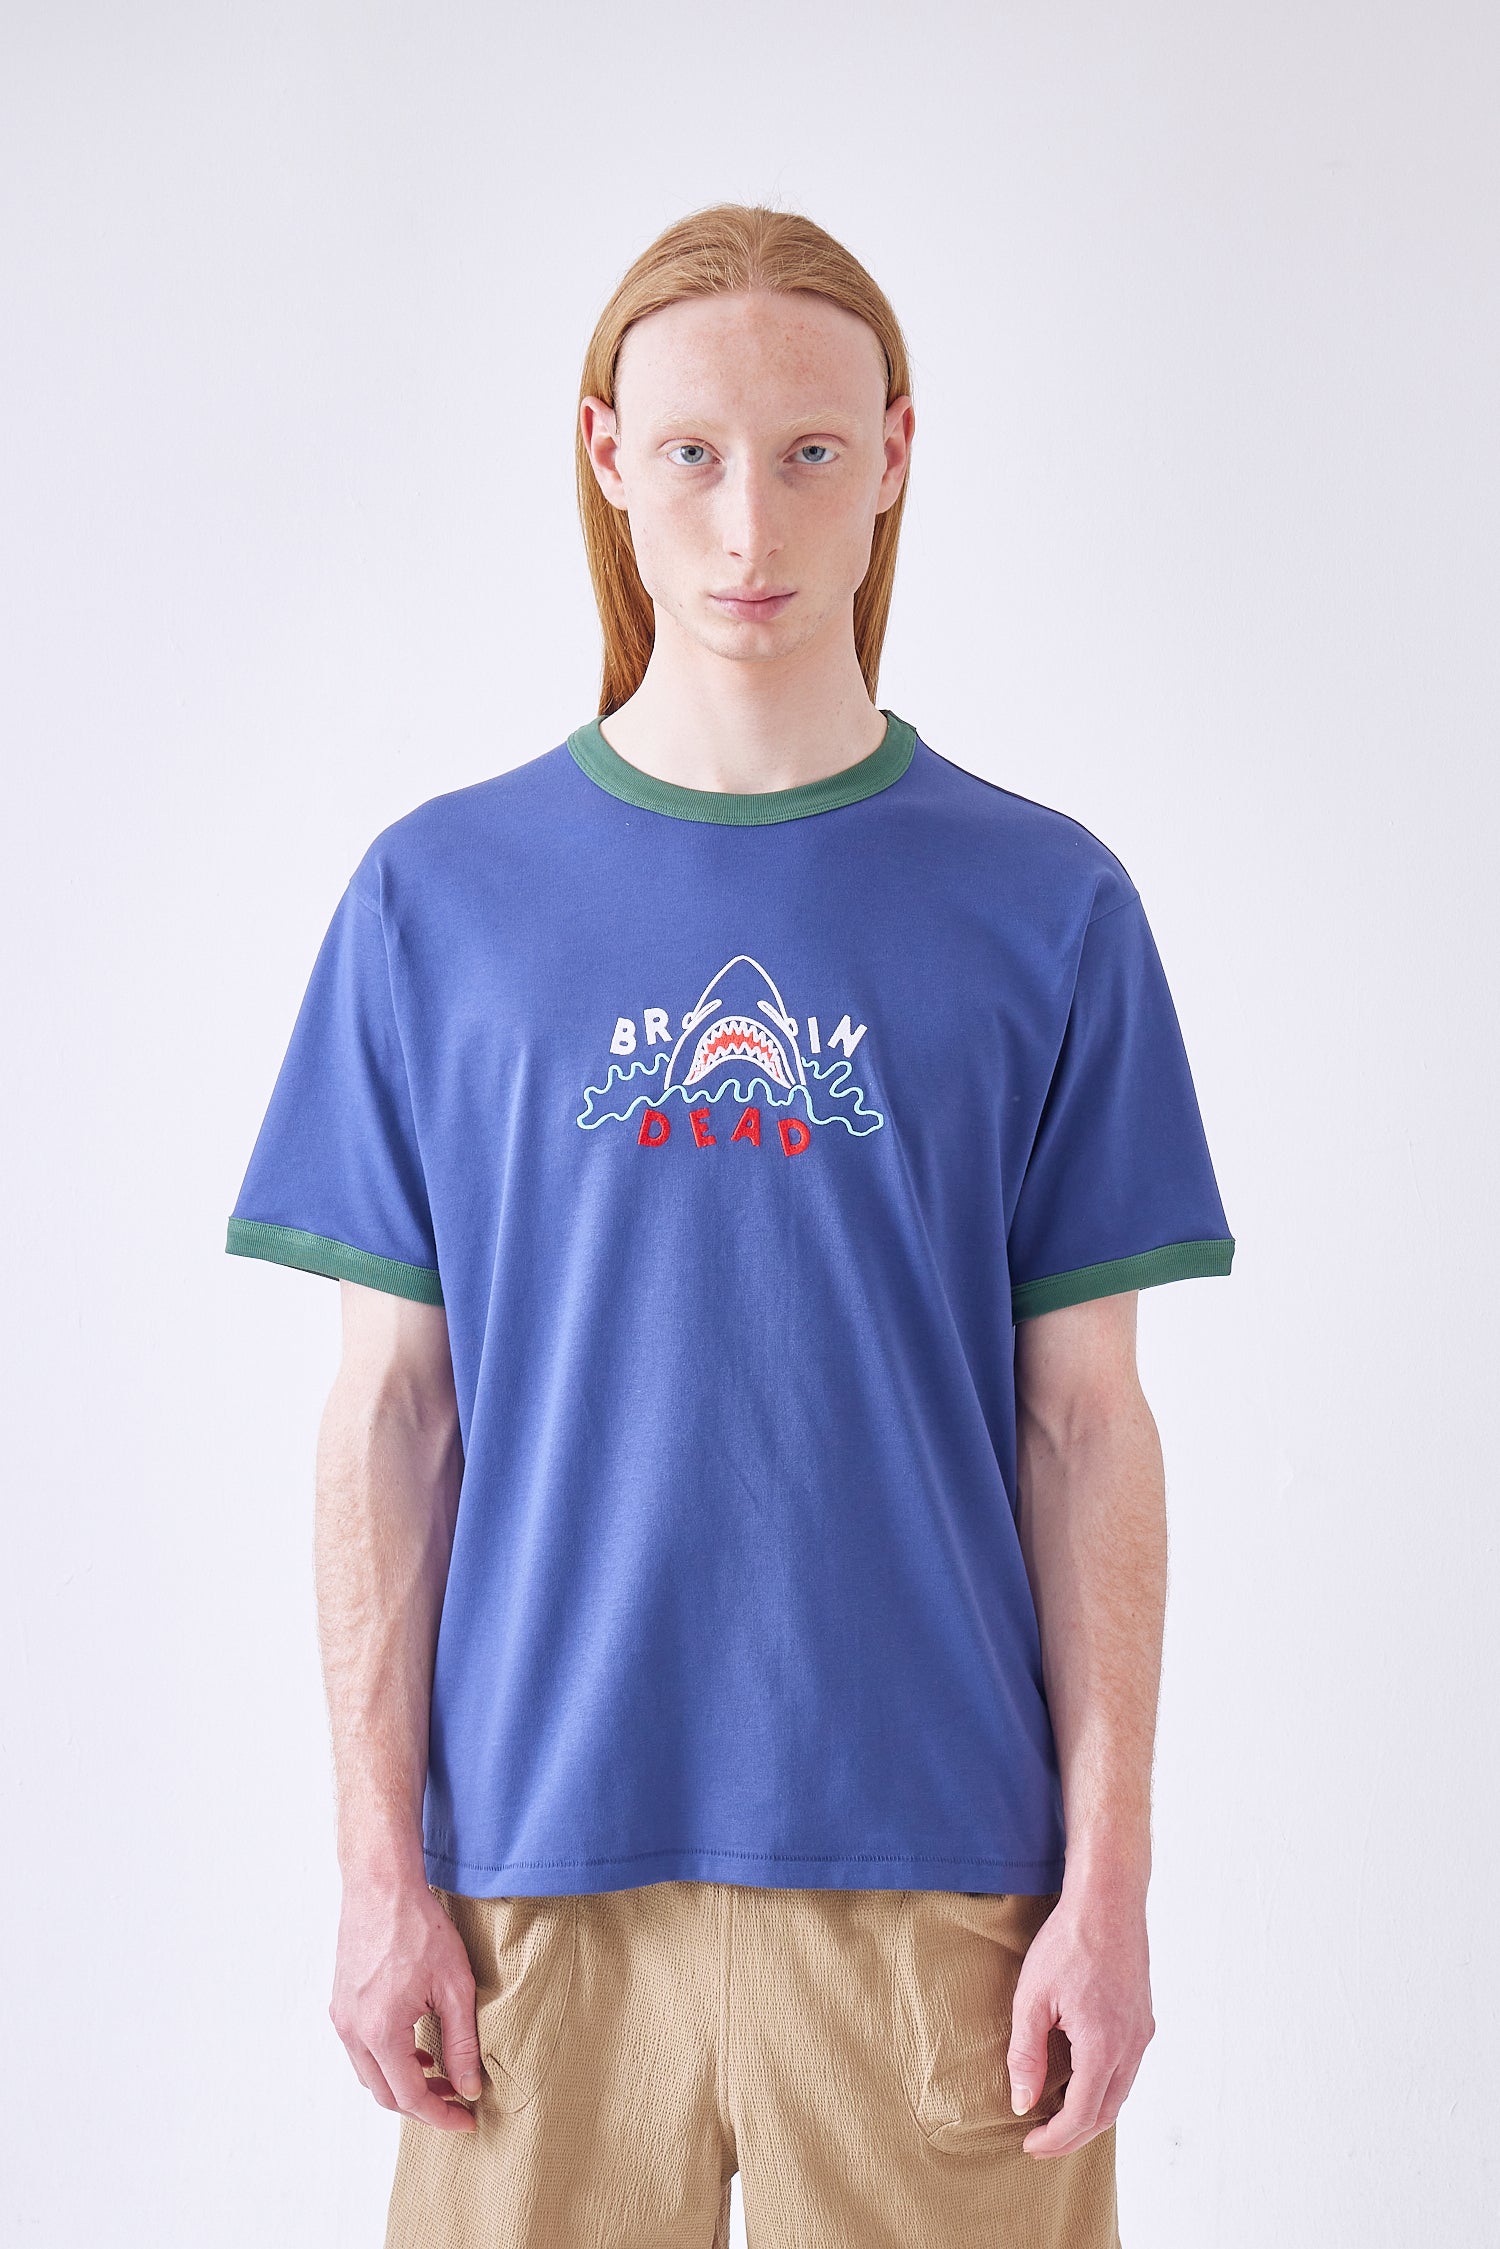 Shark Attack Ringer T-Shirt